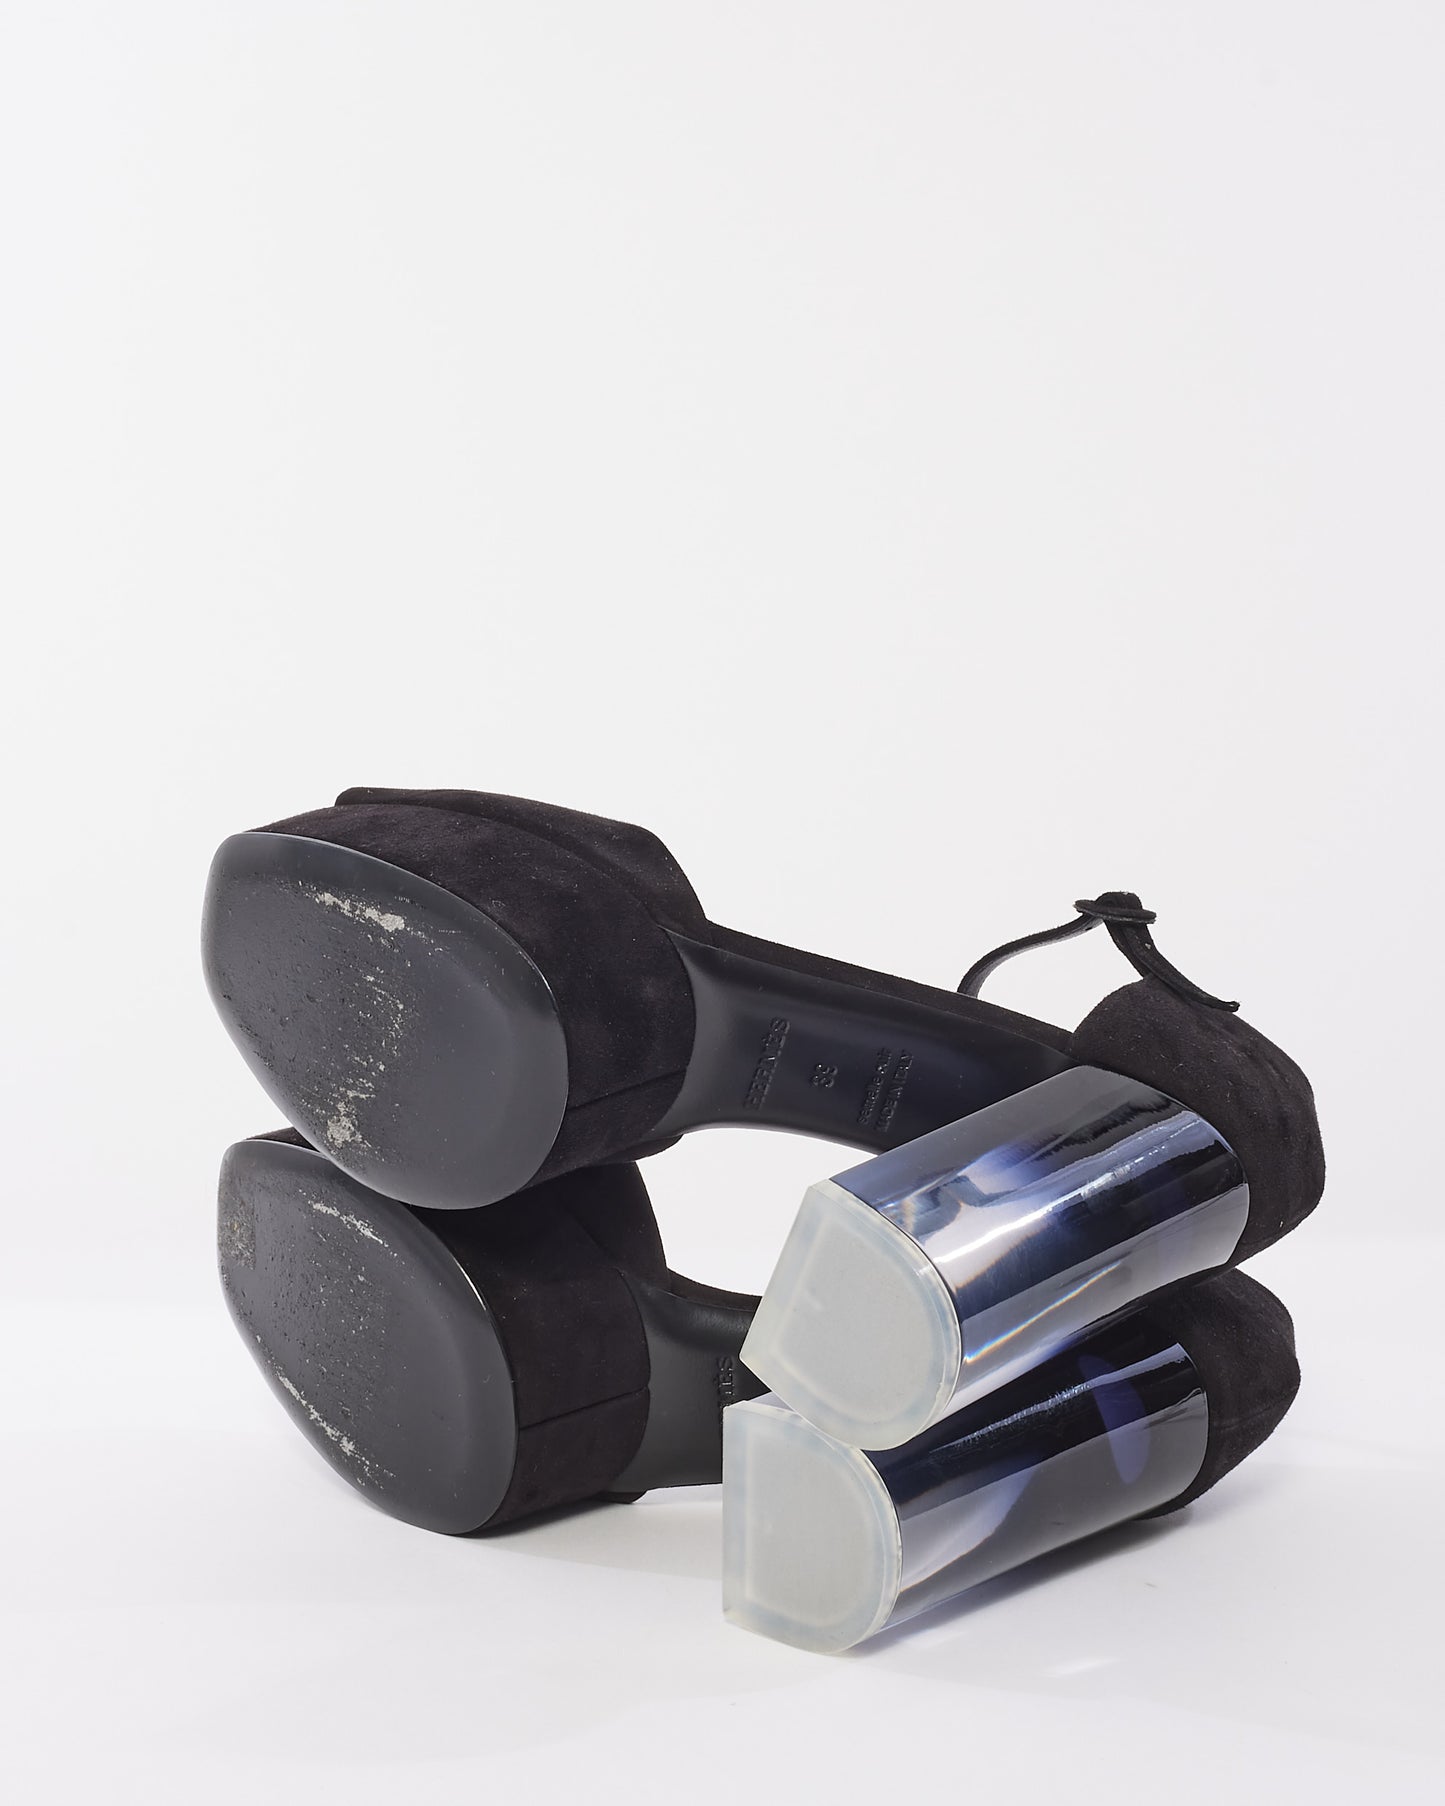 Hermès Black Suede Fever 70 D'Orsay Platform Pumps - 39